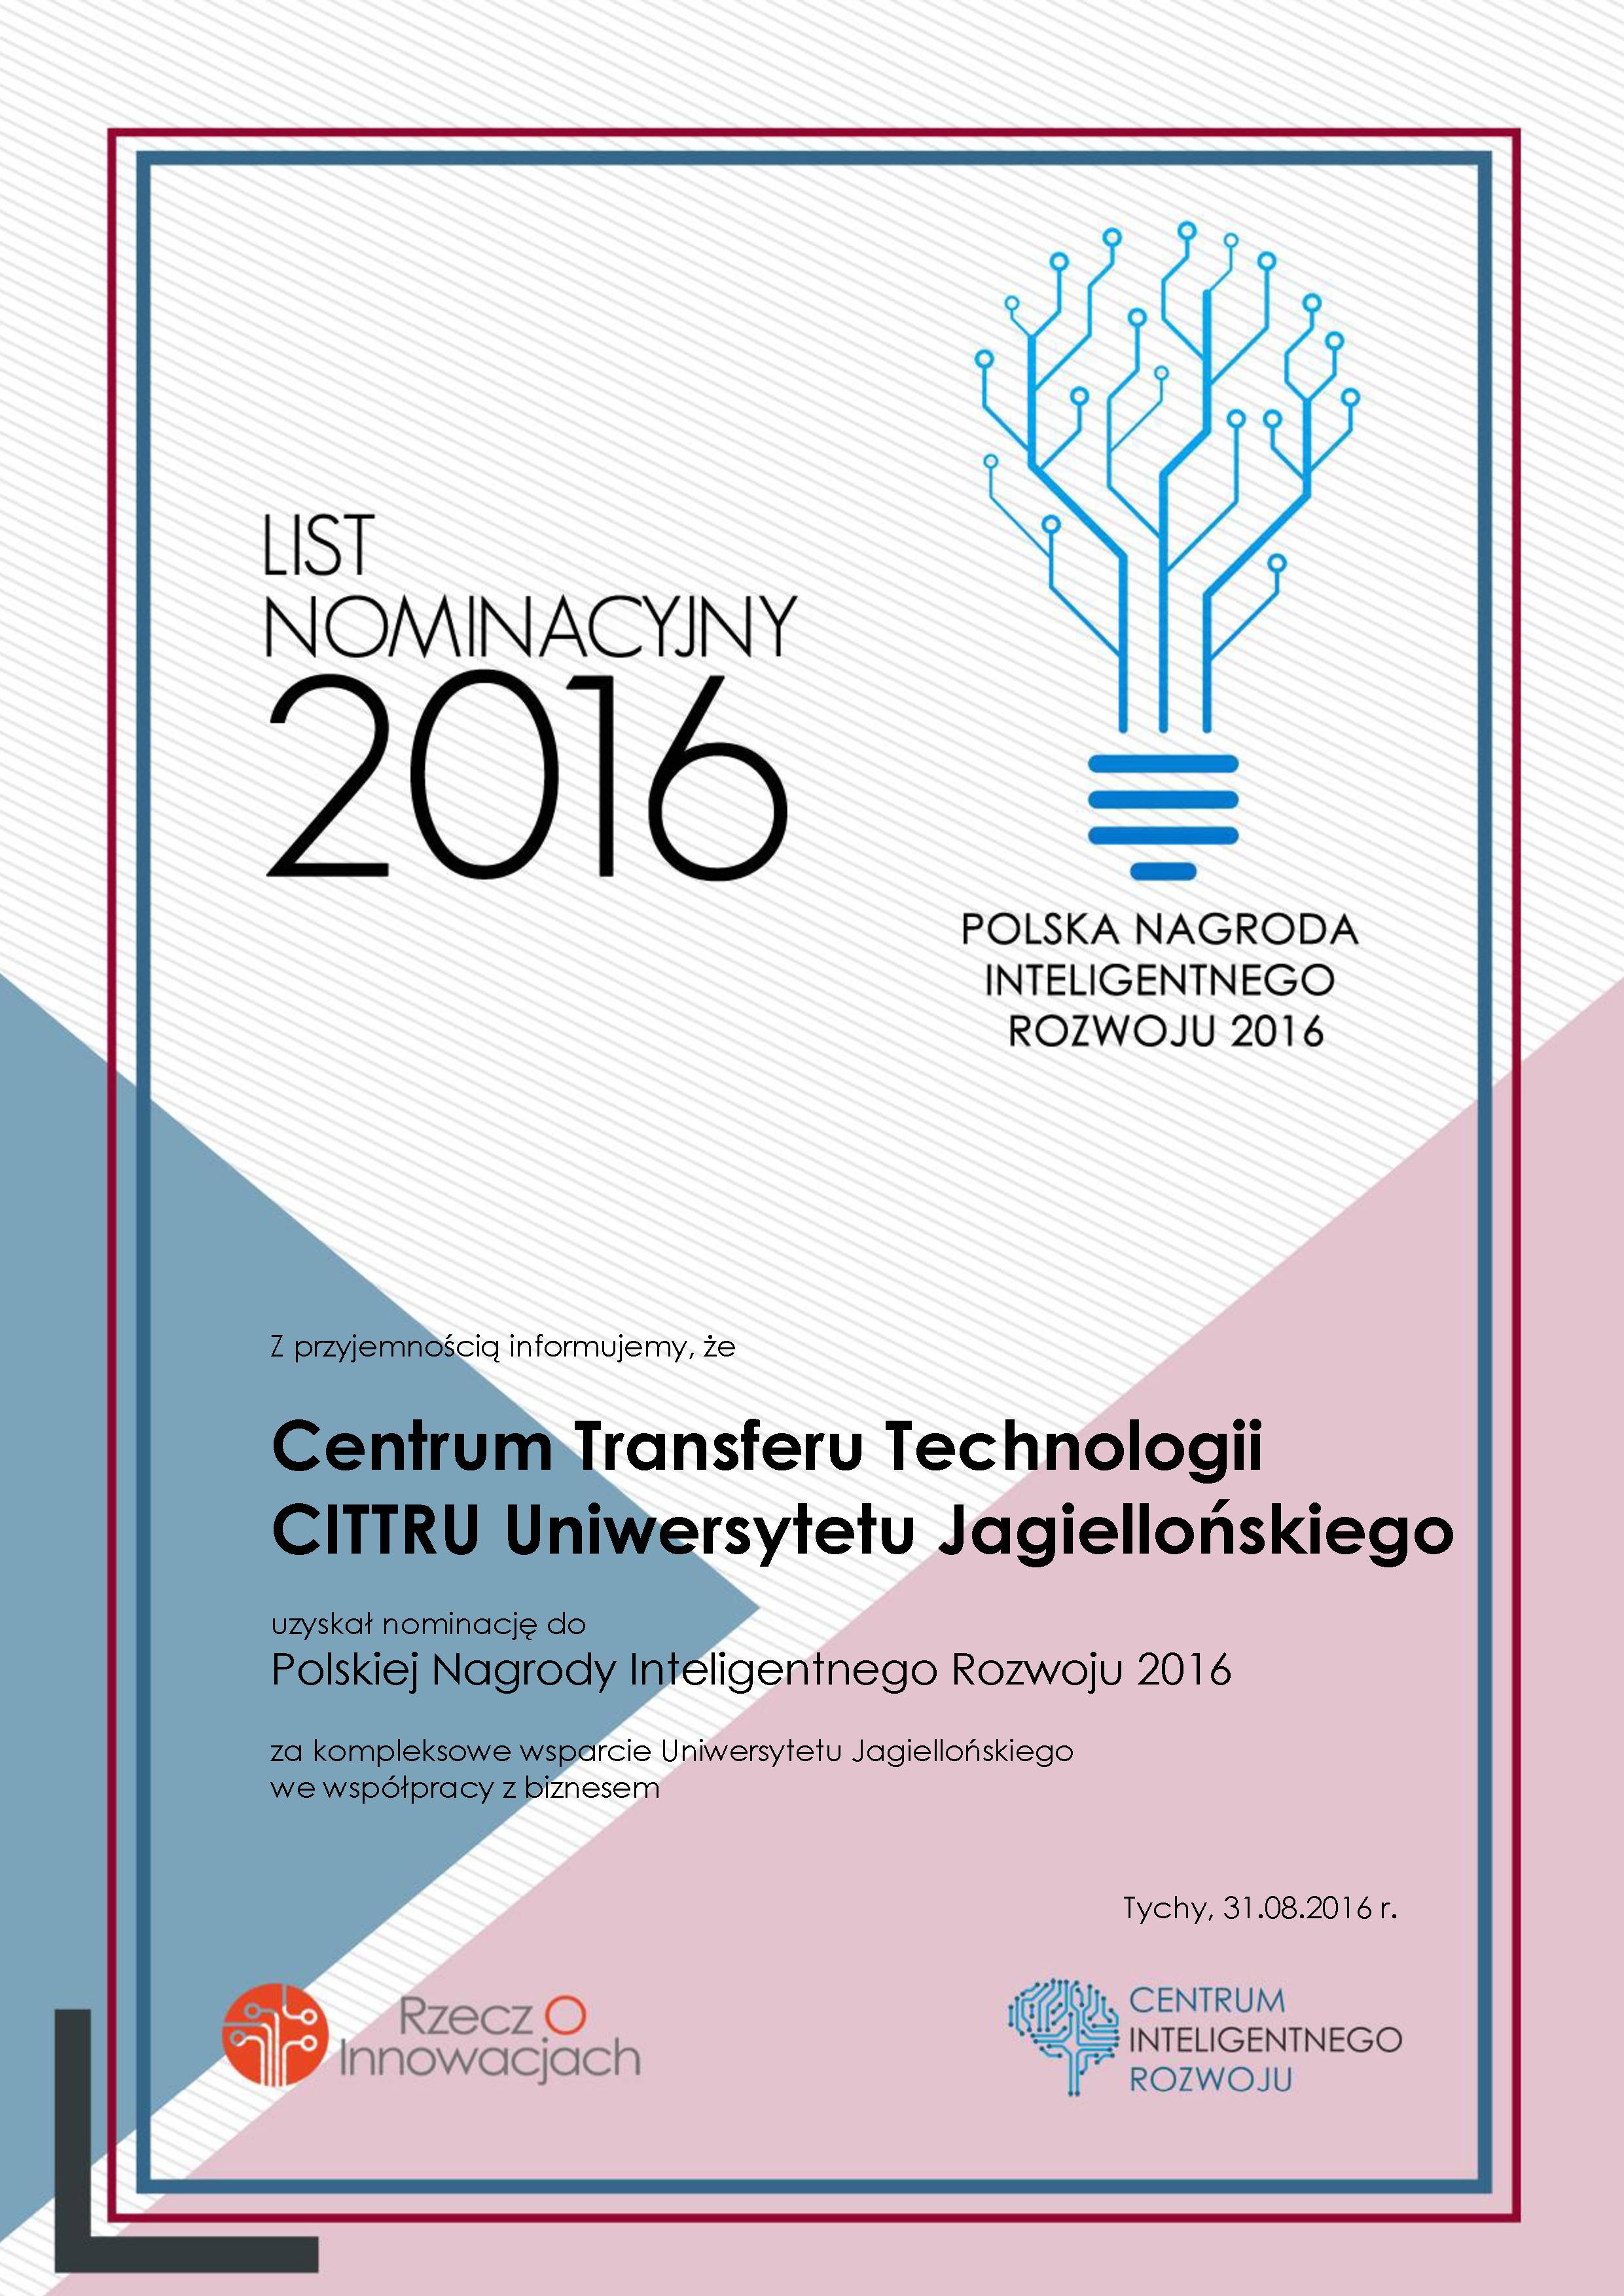 LIsto nominacyjny 2016